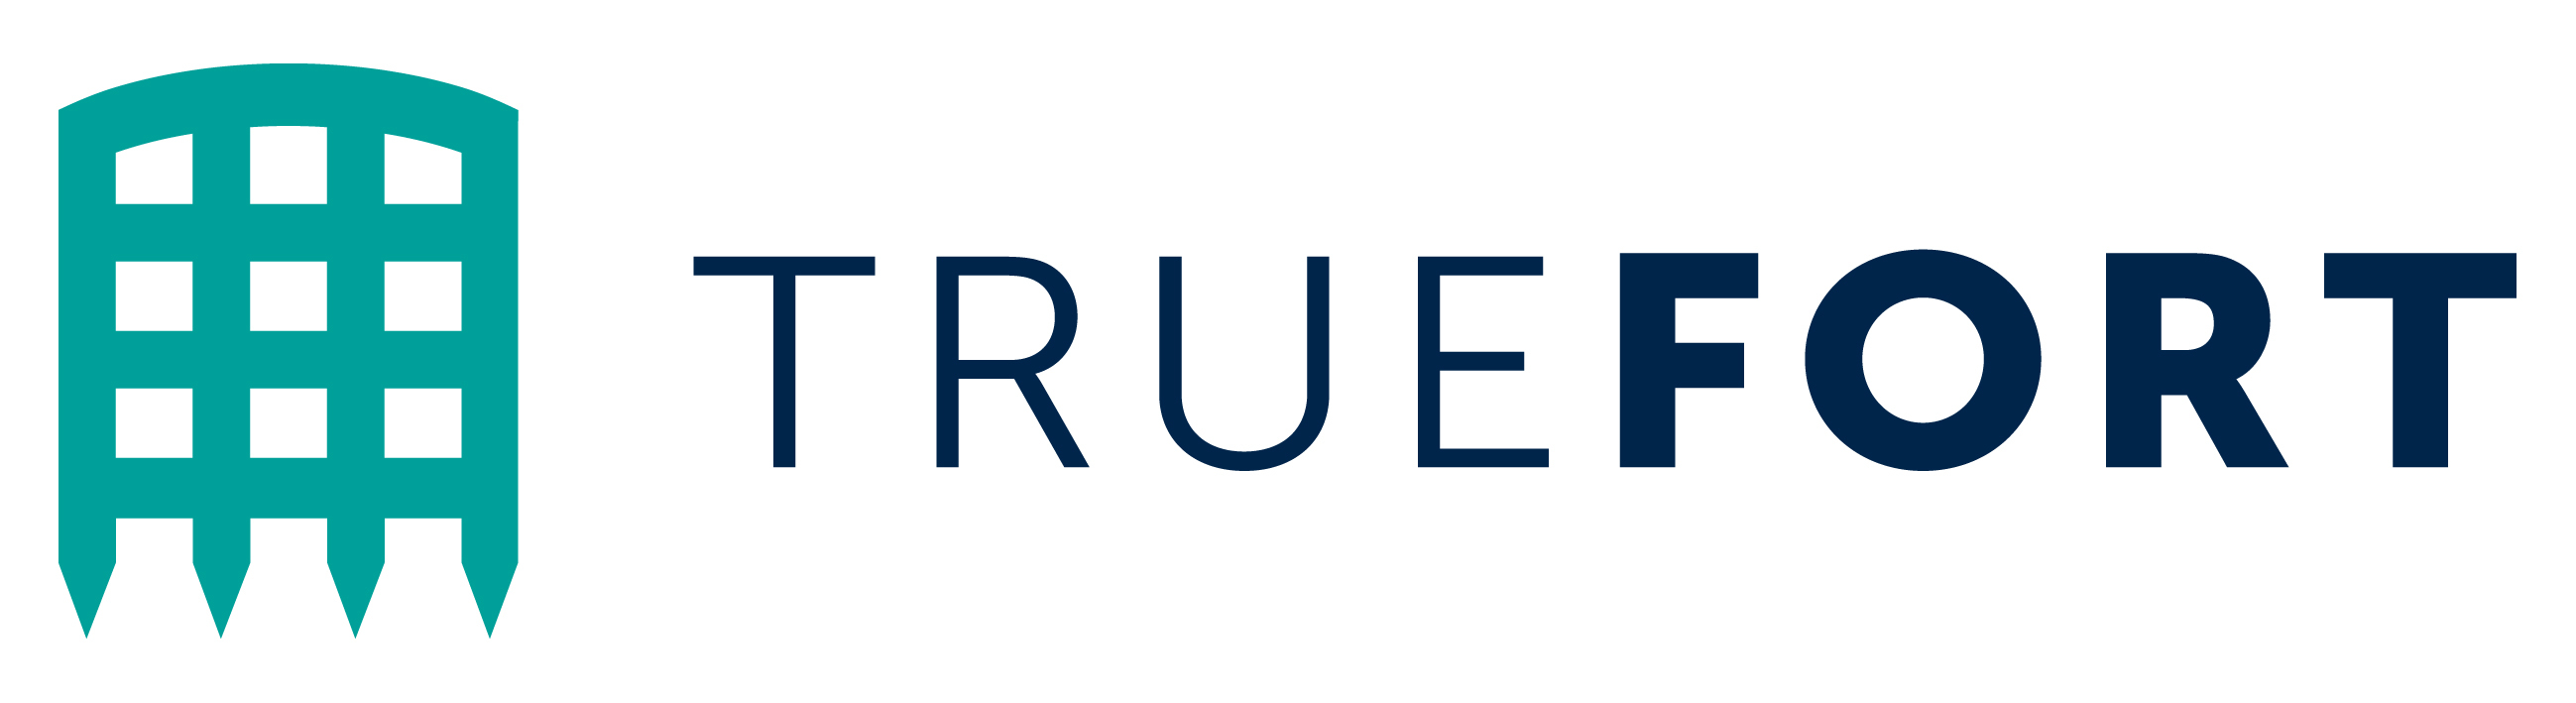 TrueFort Named TiE50 Winner for 2020 - Latest Digital Transformation ...